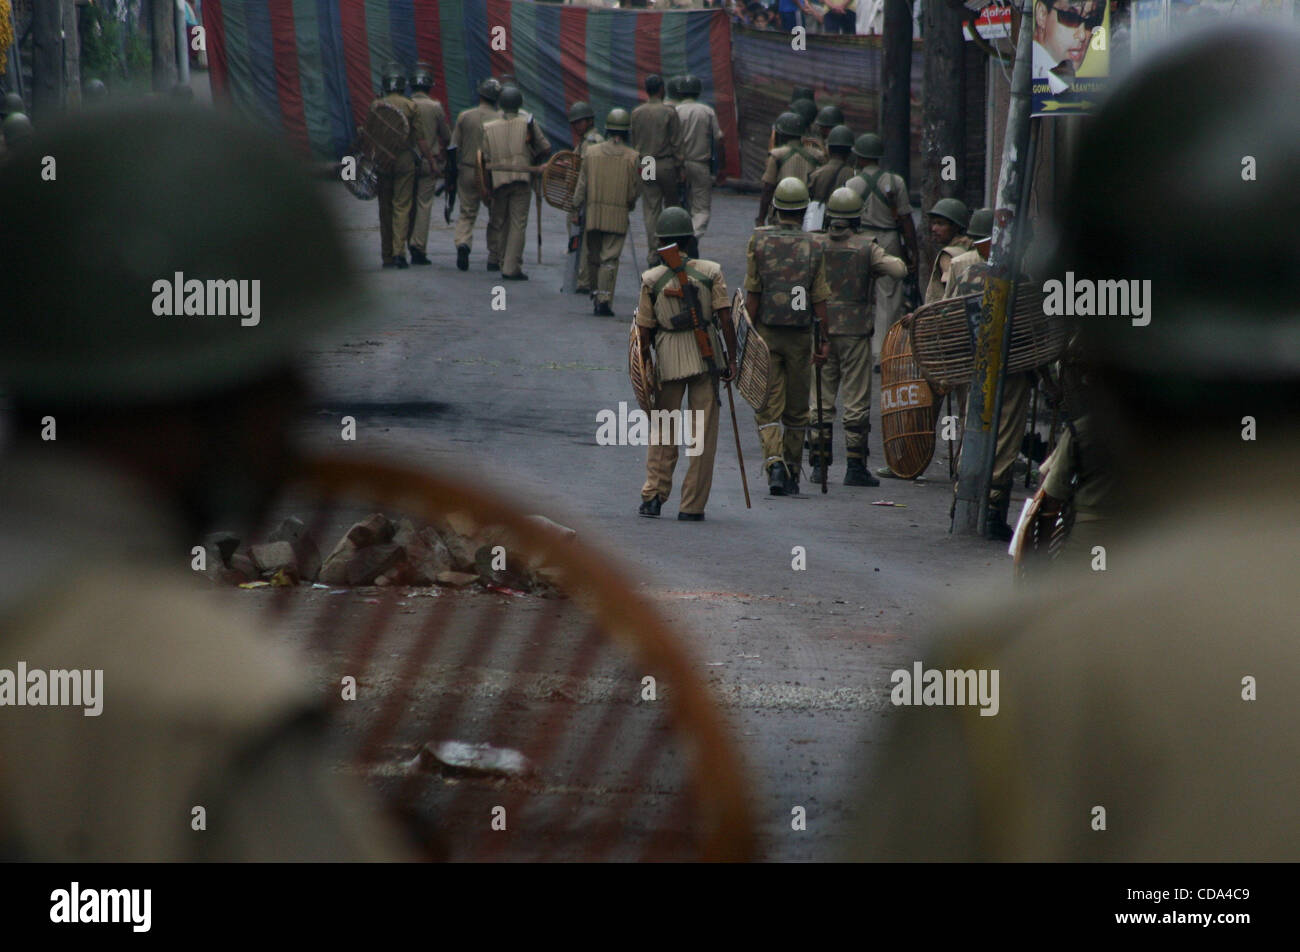 La polizia indiana sta di guardia durante la continua coprifuoco a Srinagar, la capitale estiva del Kashmir indiano, su 5/8/2010 tenendo il pedaggio nella violenza nella valle del Kashmir a 47 dal Giugno 11 Foto/Altaf Zargar/Zuma premere Foto Stock